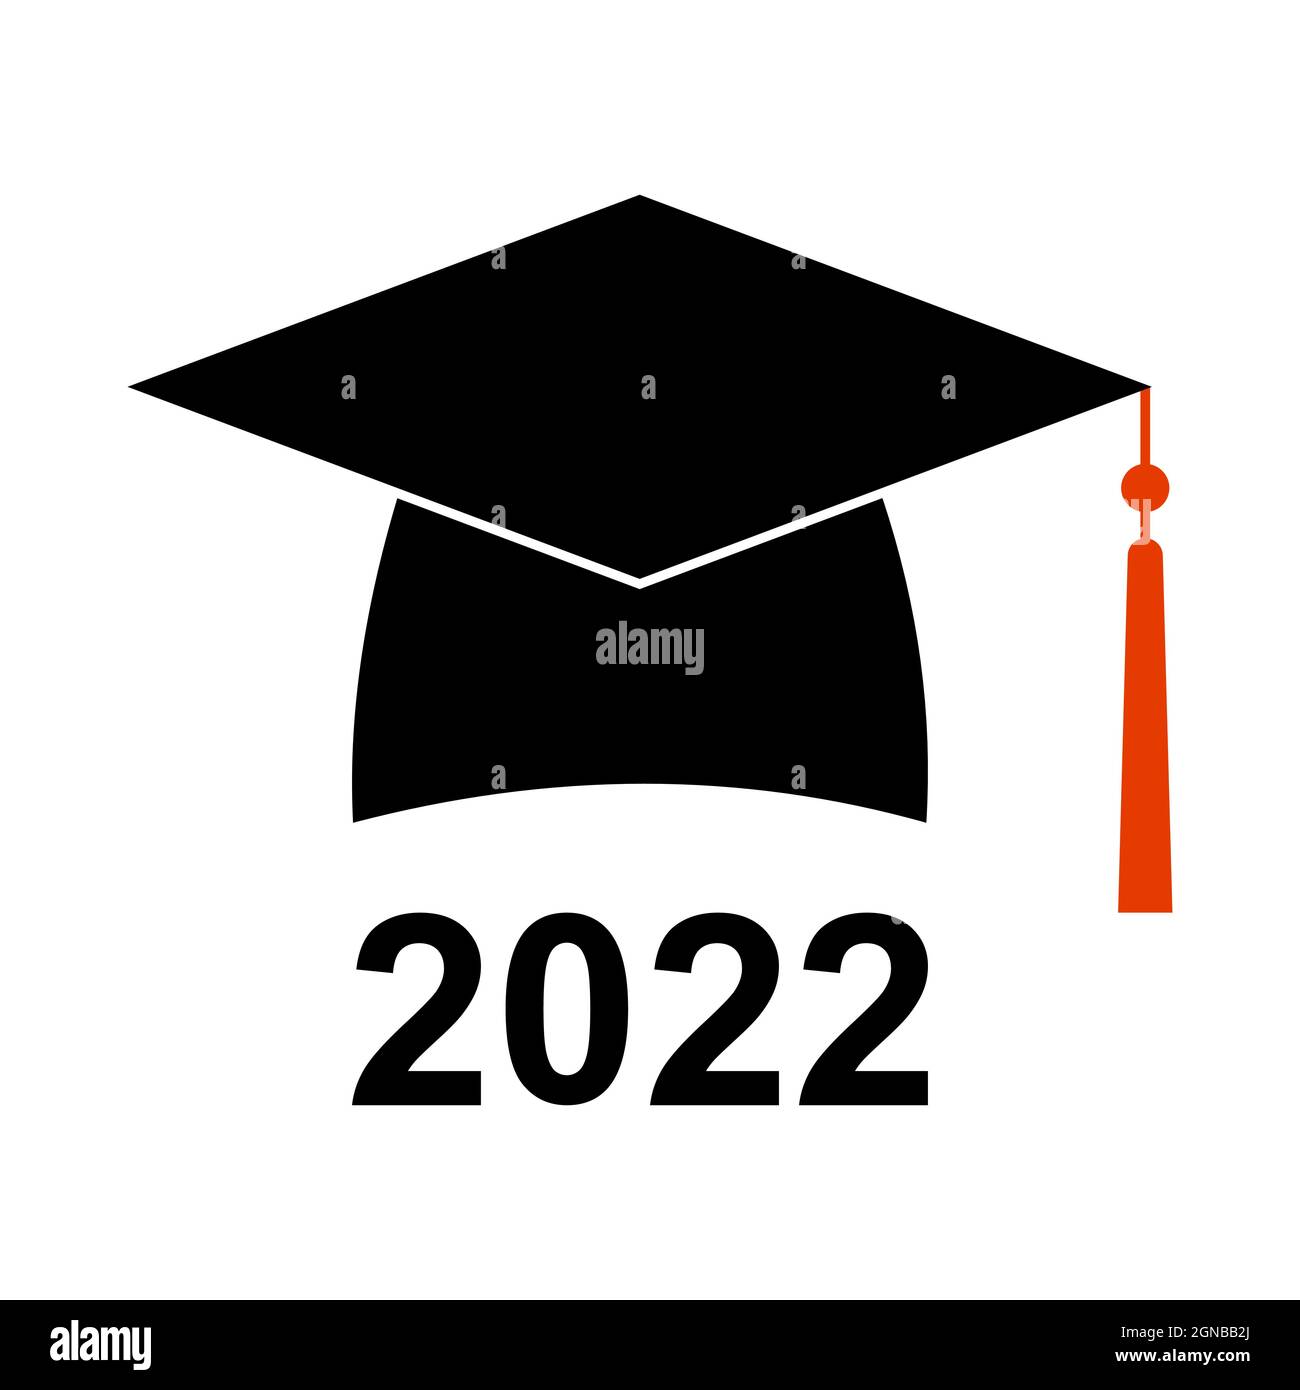 Herzlichen Glückwunsch zum Abschluss 2022 Student Graduation hat quadratische akademische Kappe Symbol Bachelor-und Master-Abschlüsse Stock Vektor